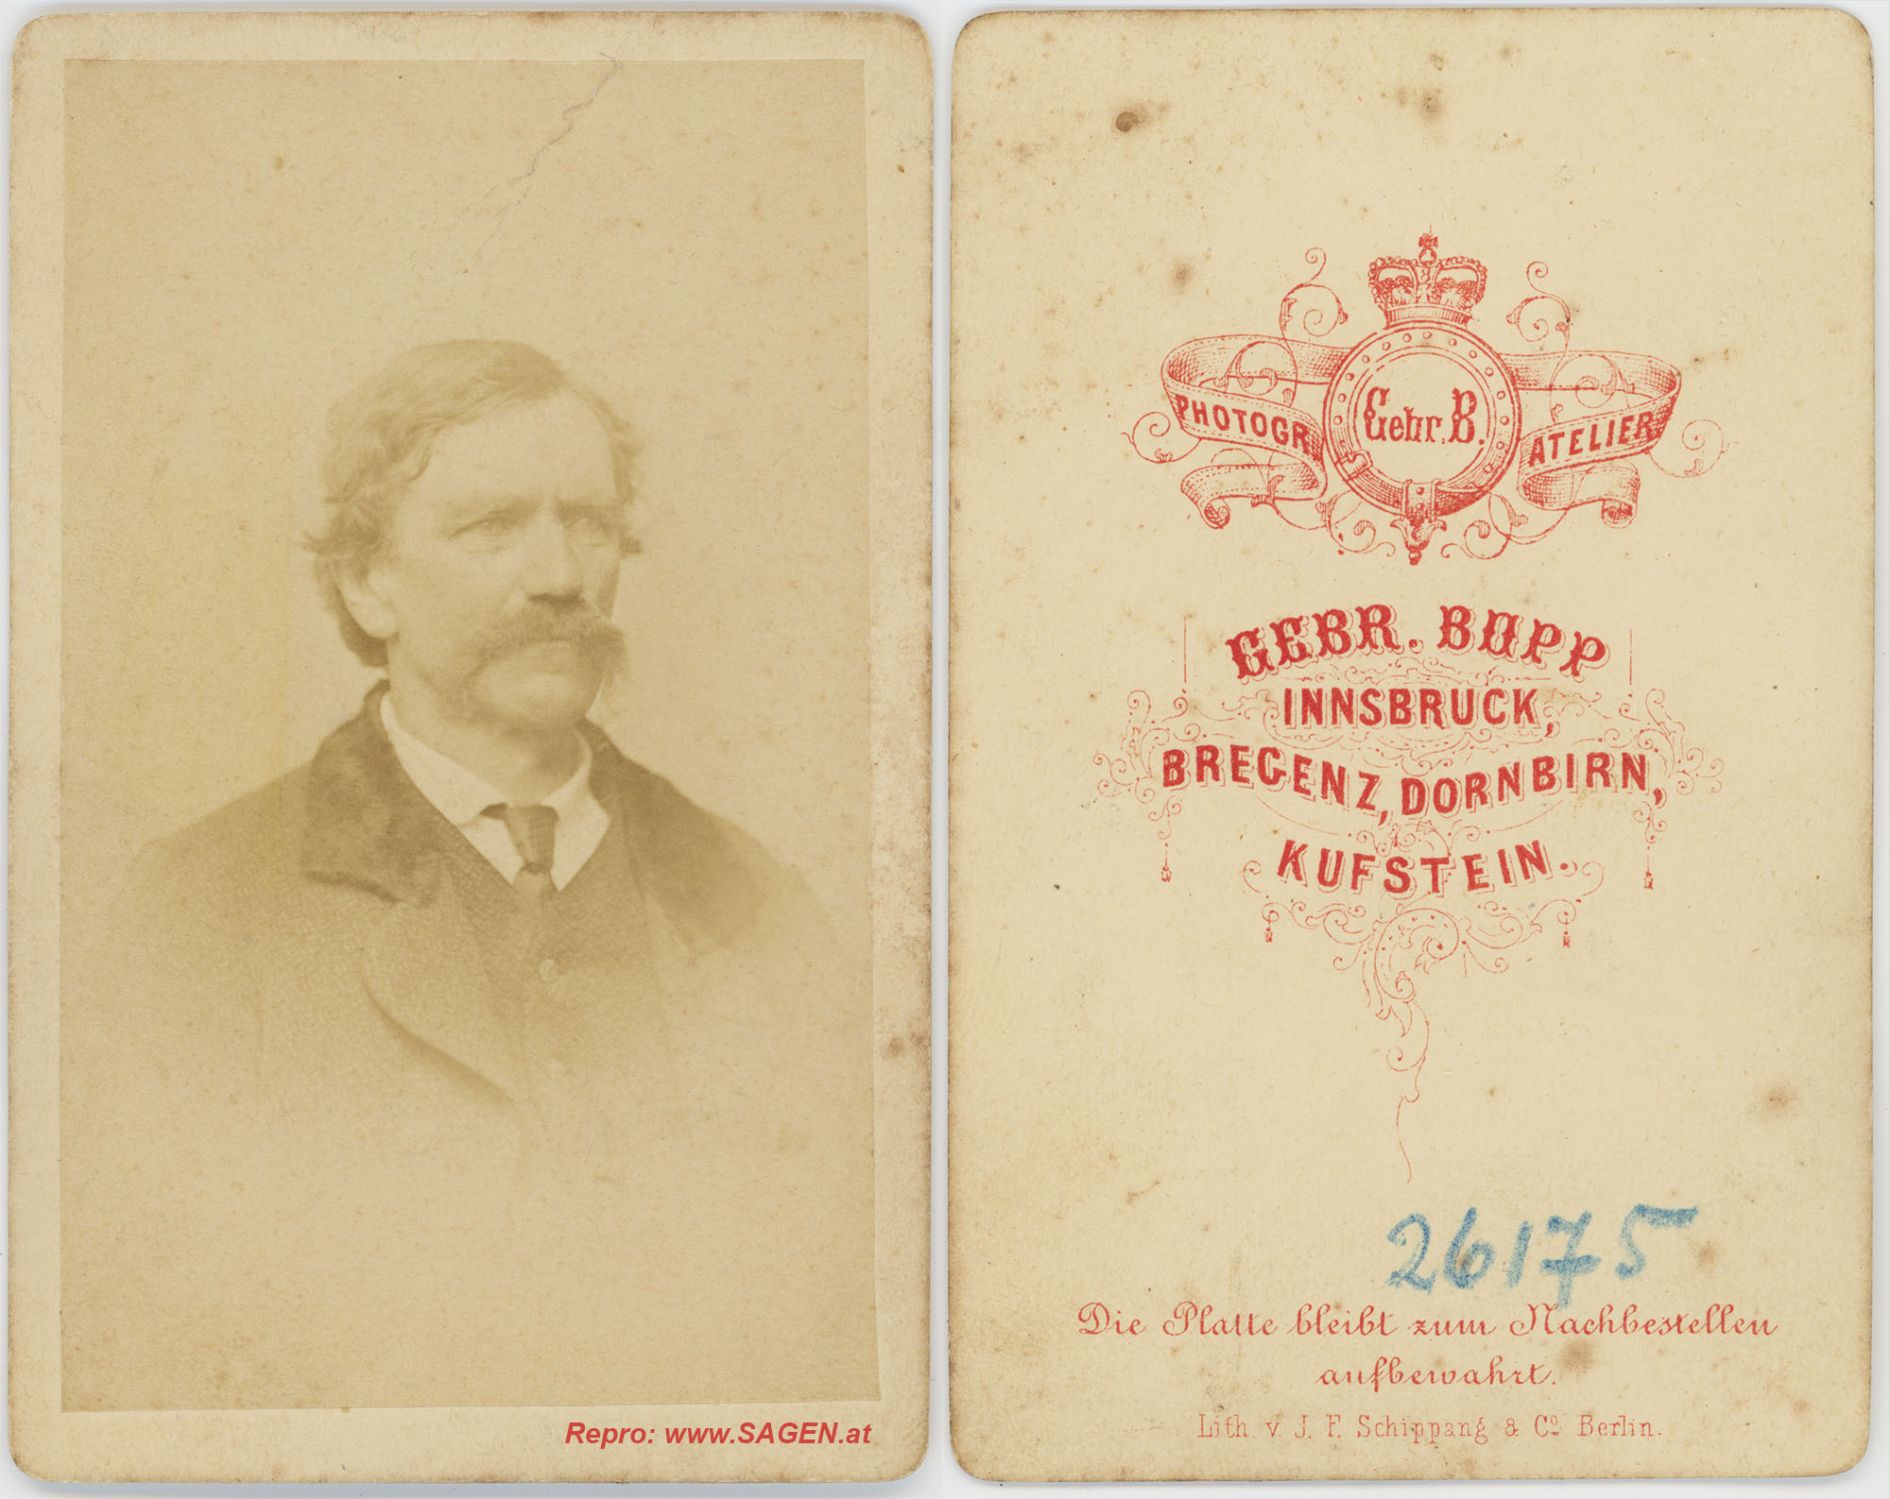 CdV Herrenporträt Atelier Gebrüder Bopp Innsbruck 1870er